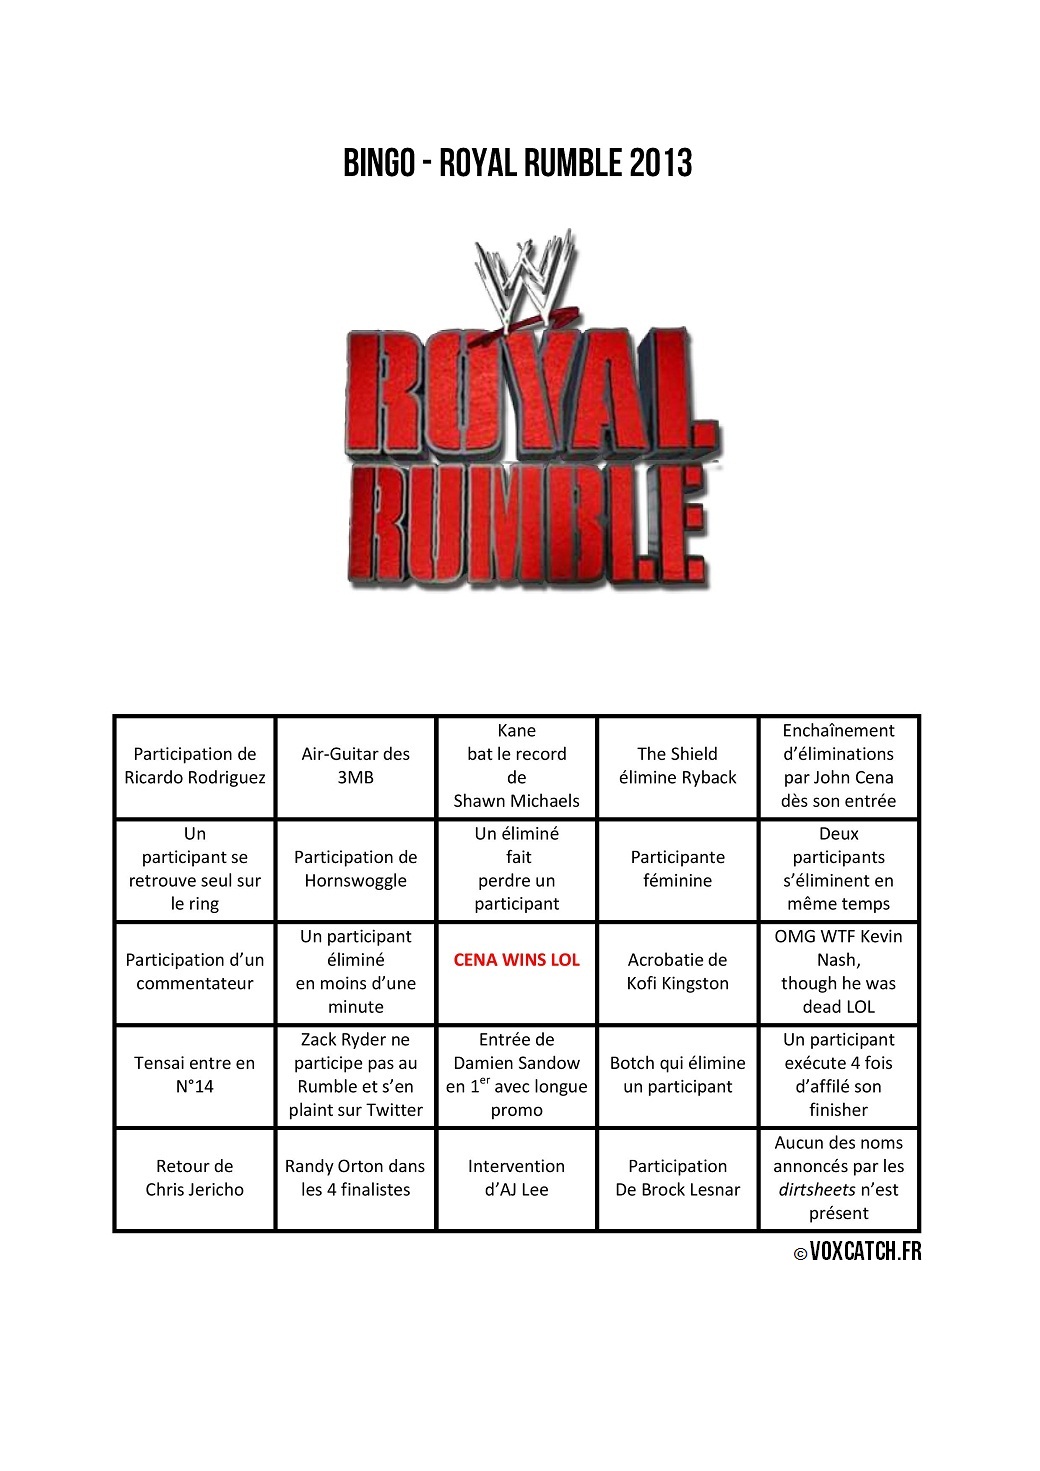 Royal Rumble Bingo VoxCatch